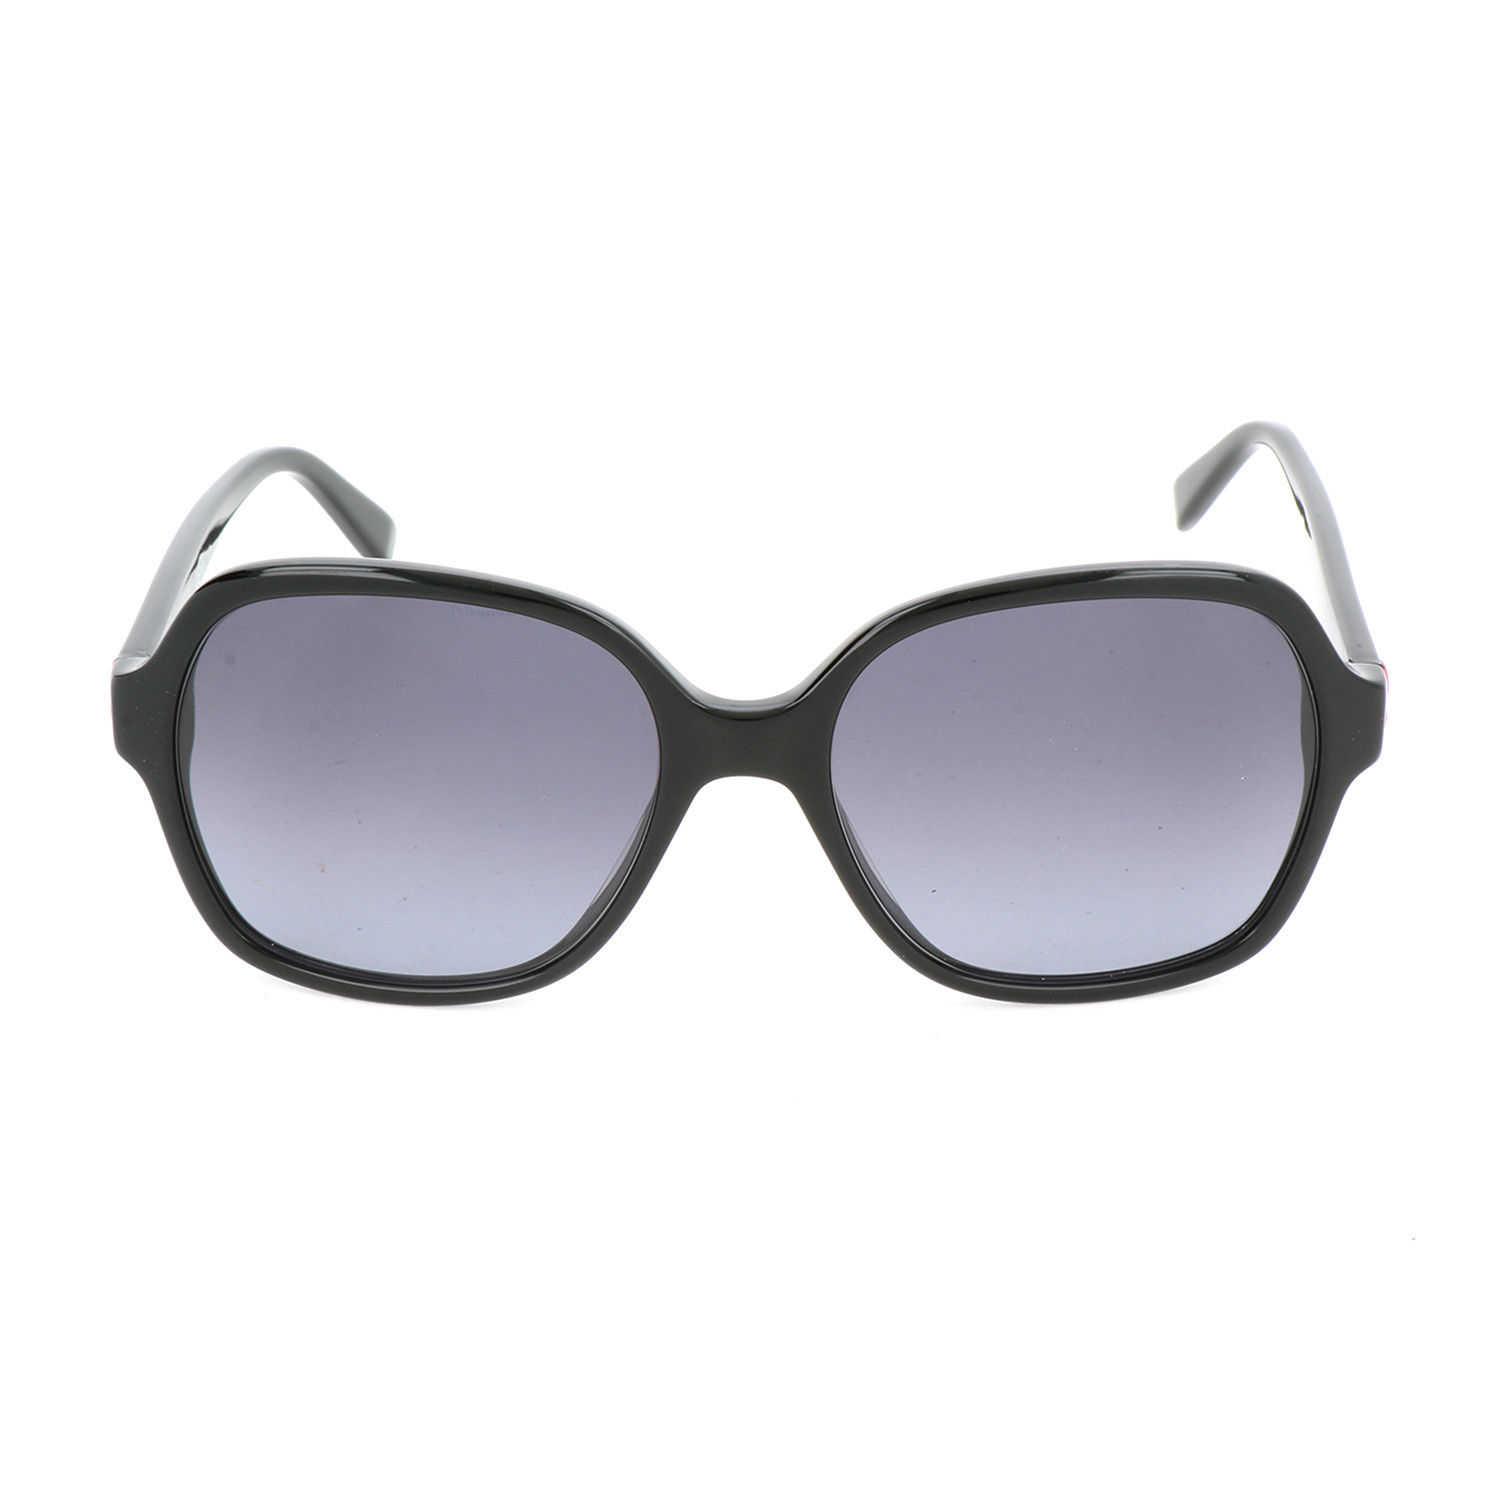 Pierre Cardin Women's Sunglasses // 8449 // Black - Pierre Cardin ...